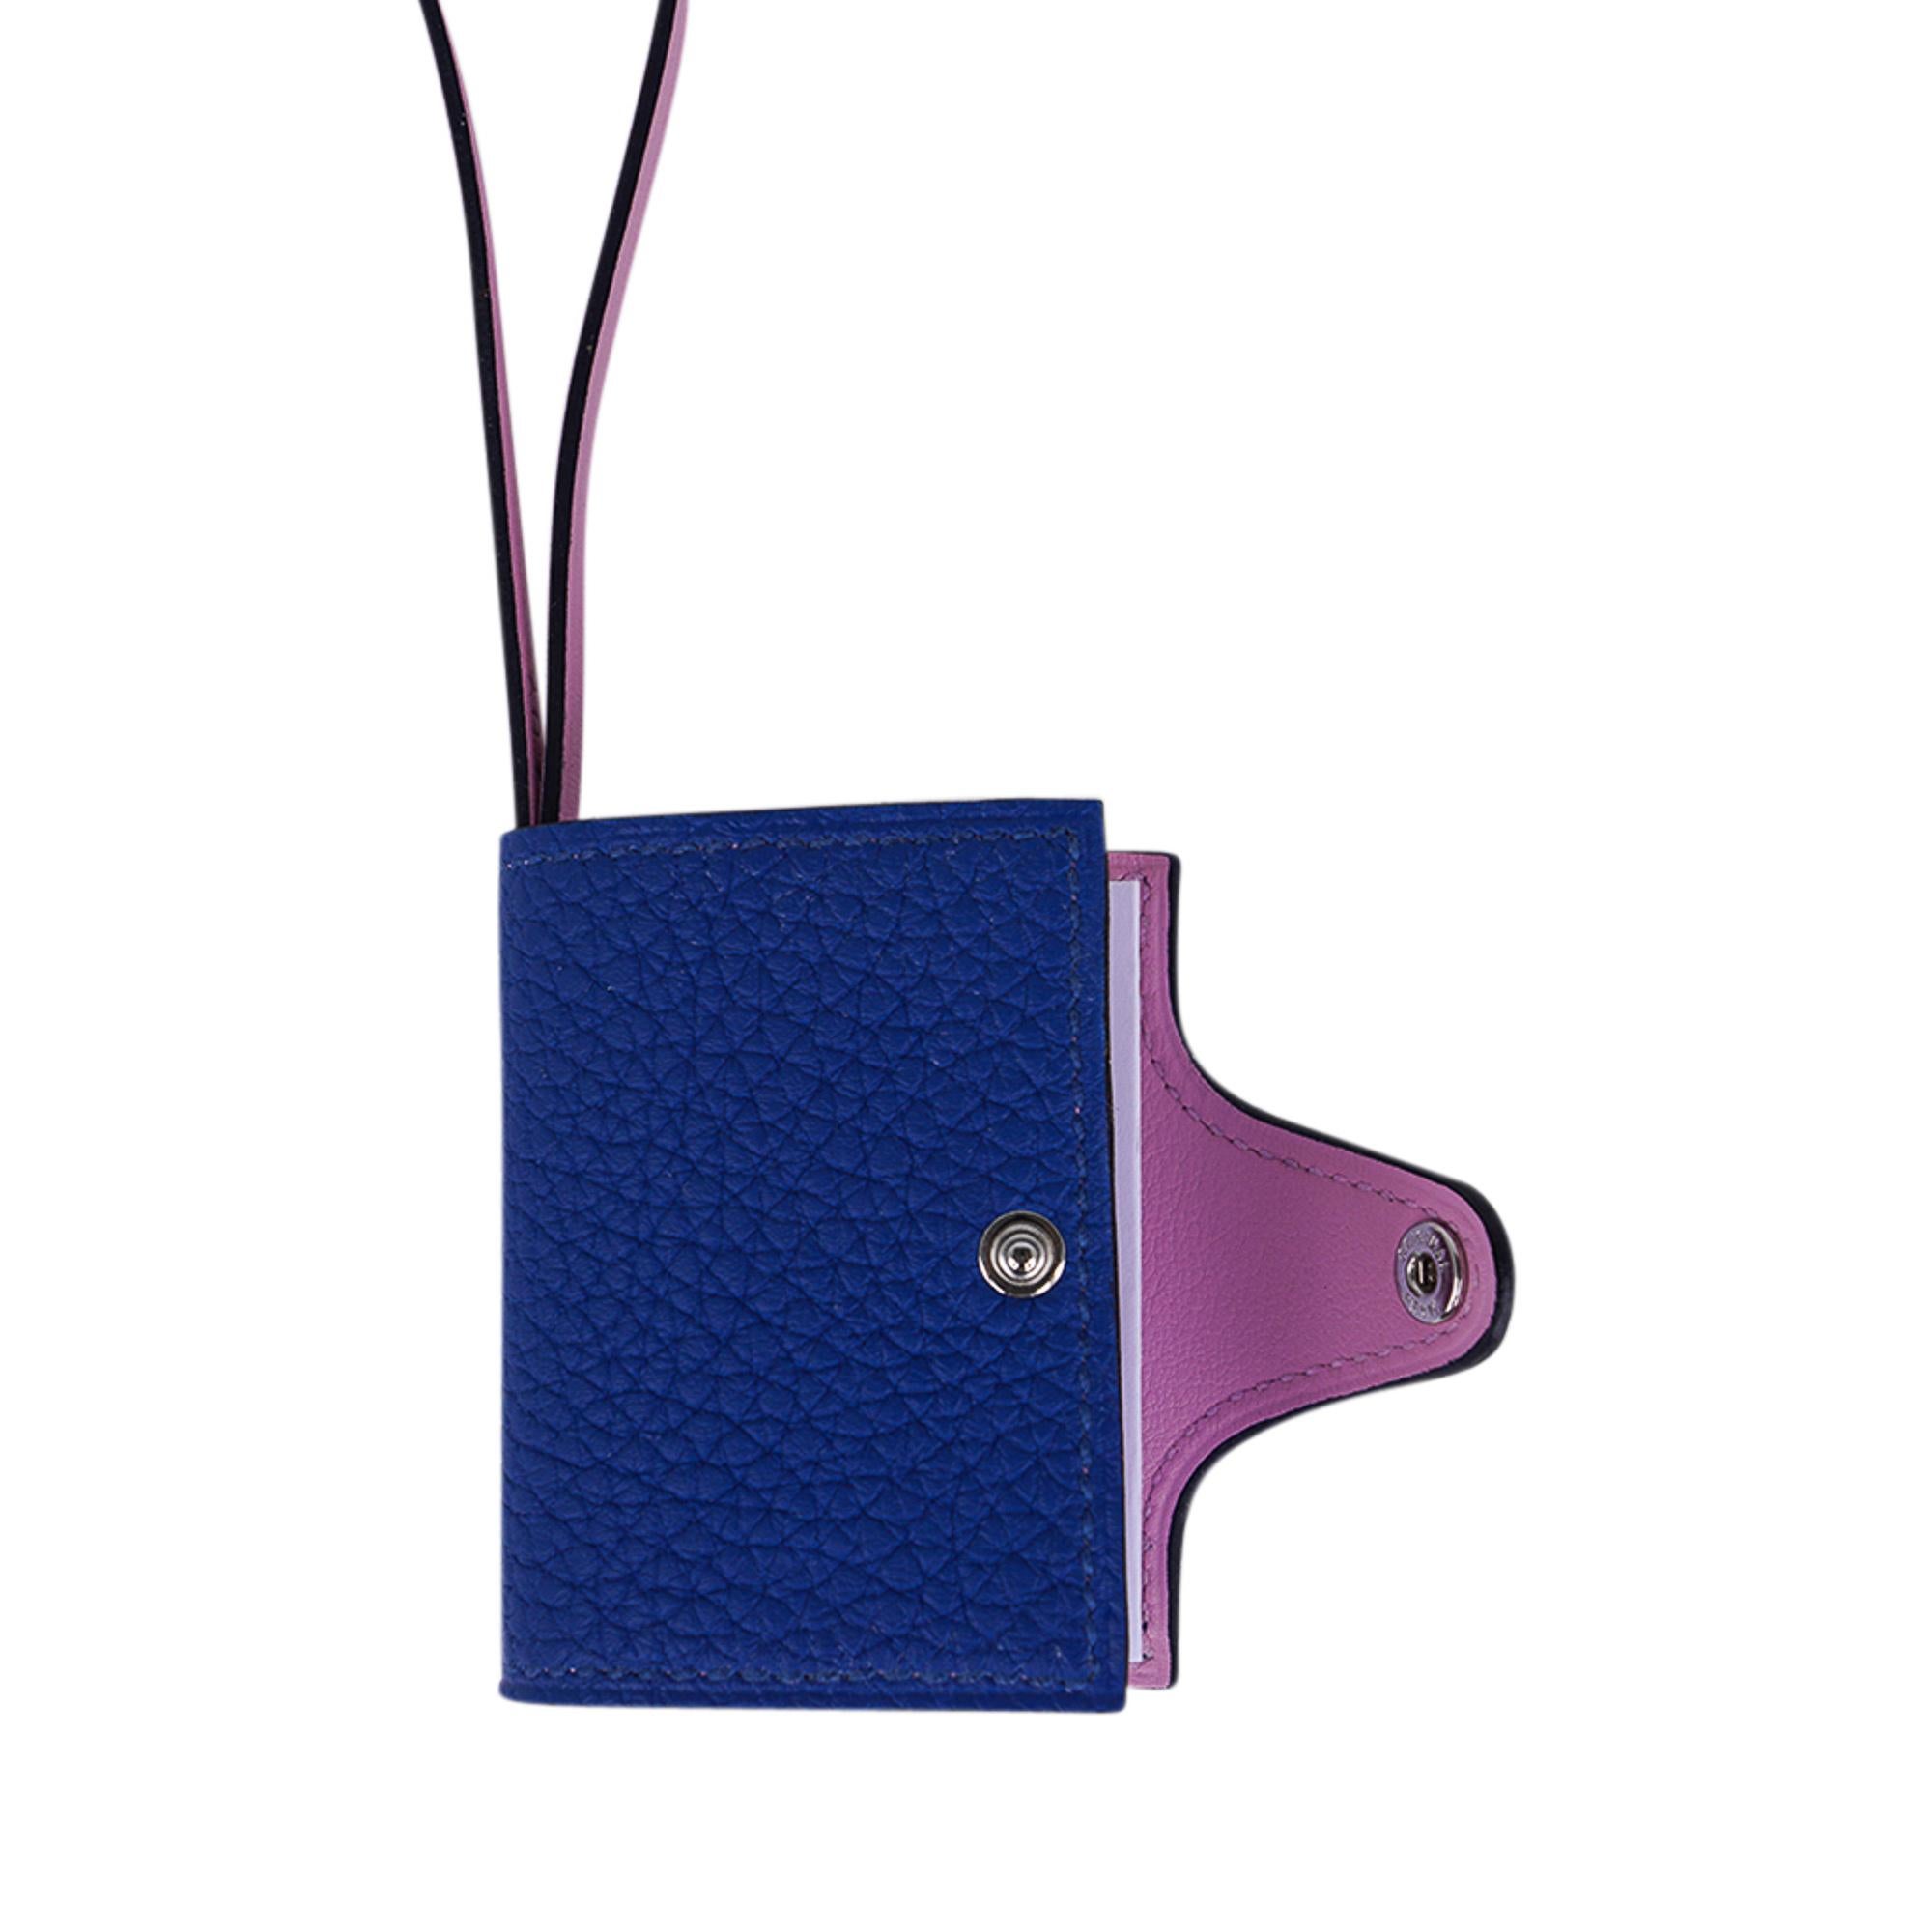 Hermes Ulysse Nano Bag Charm Blue de France / Mauve Sylvestre For Sale 2